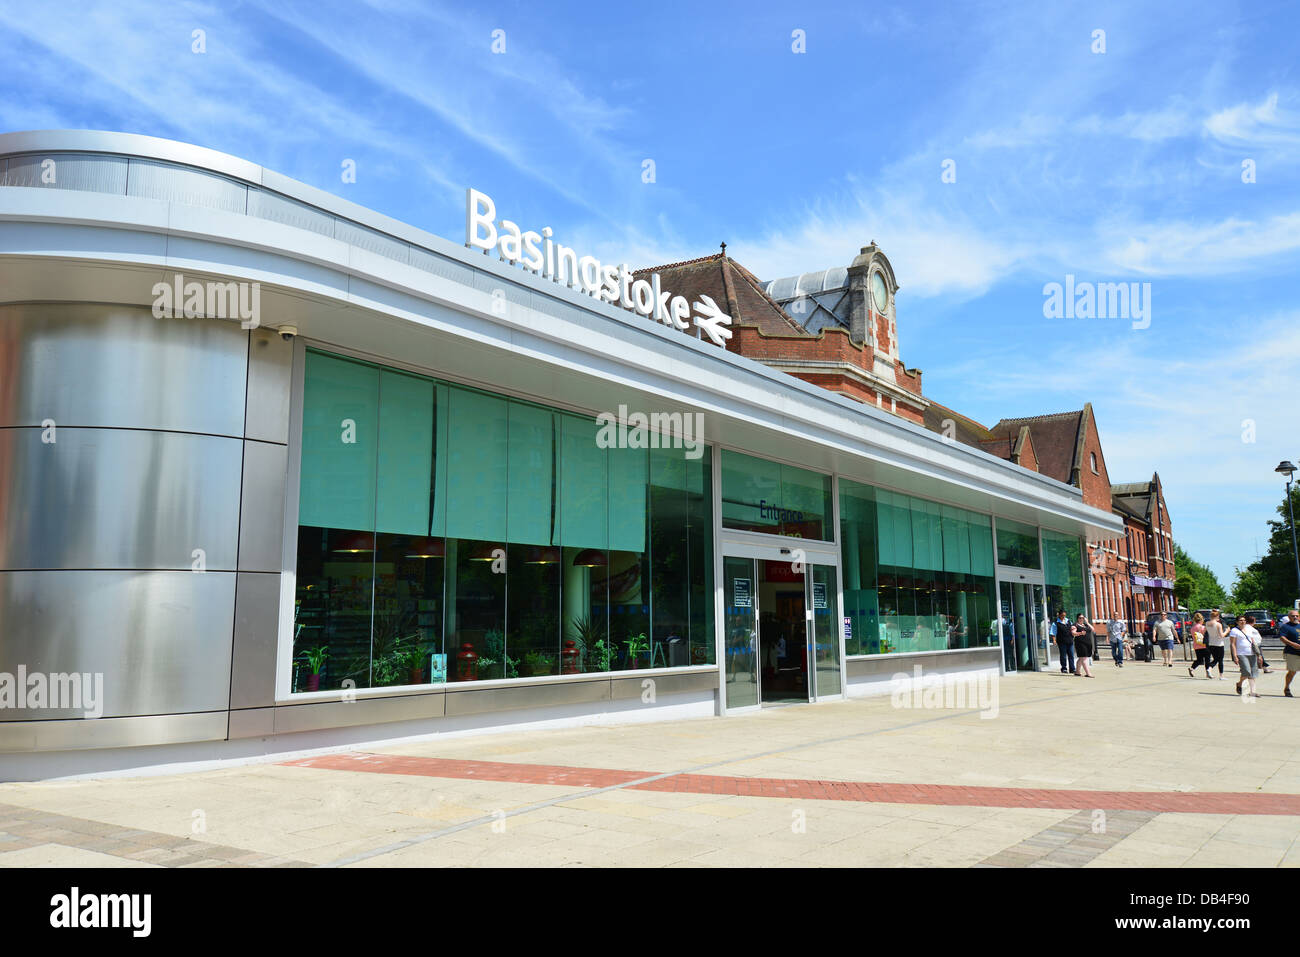 Basingstoke Railway Station, Basingstoke, Hampshire, England, United Kingdom Stock Photo